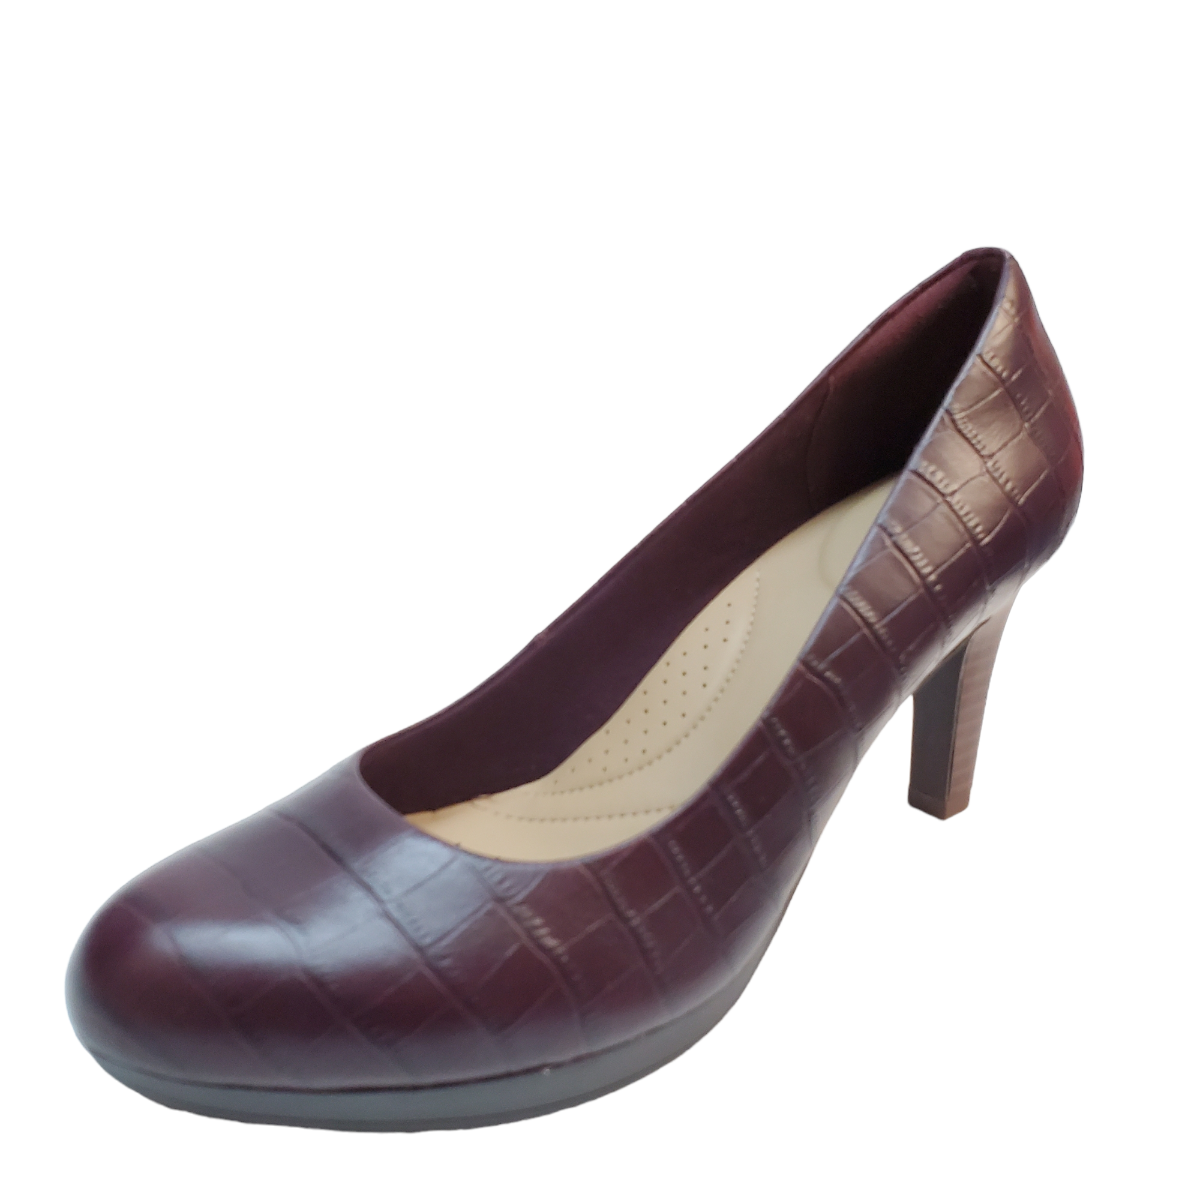 Clarks Of England Womens Shoes Adriel Viola High Heel Pumps Burgundy Affordable Designer Brands Affordable Designer Brands